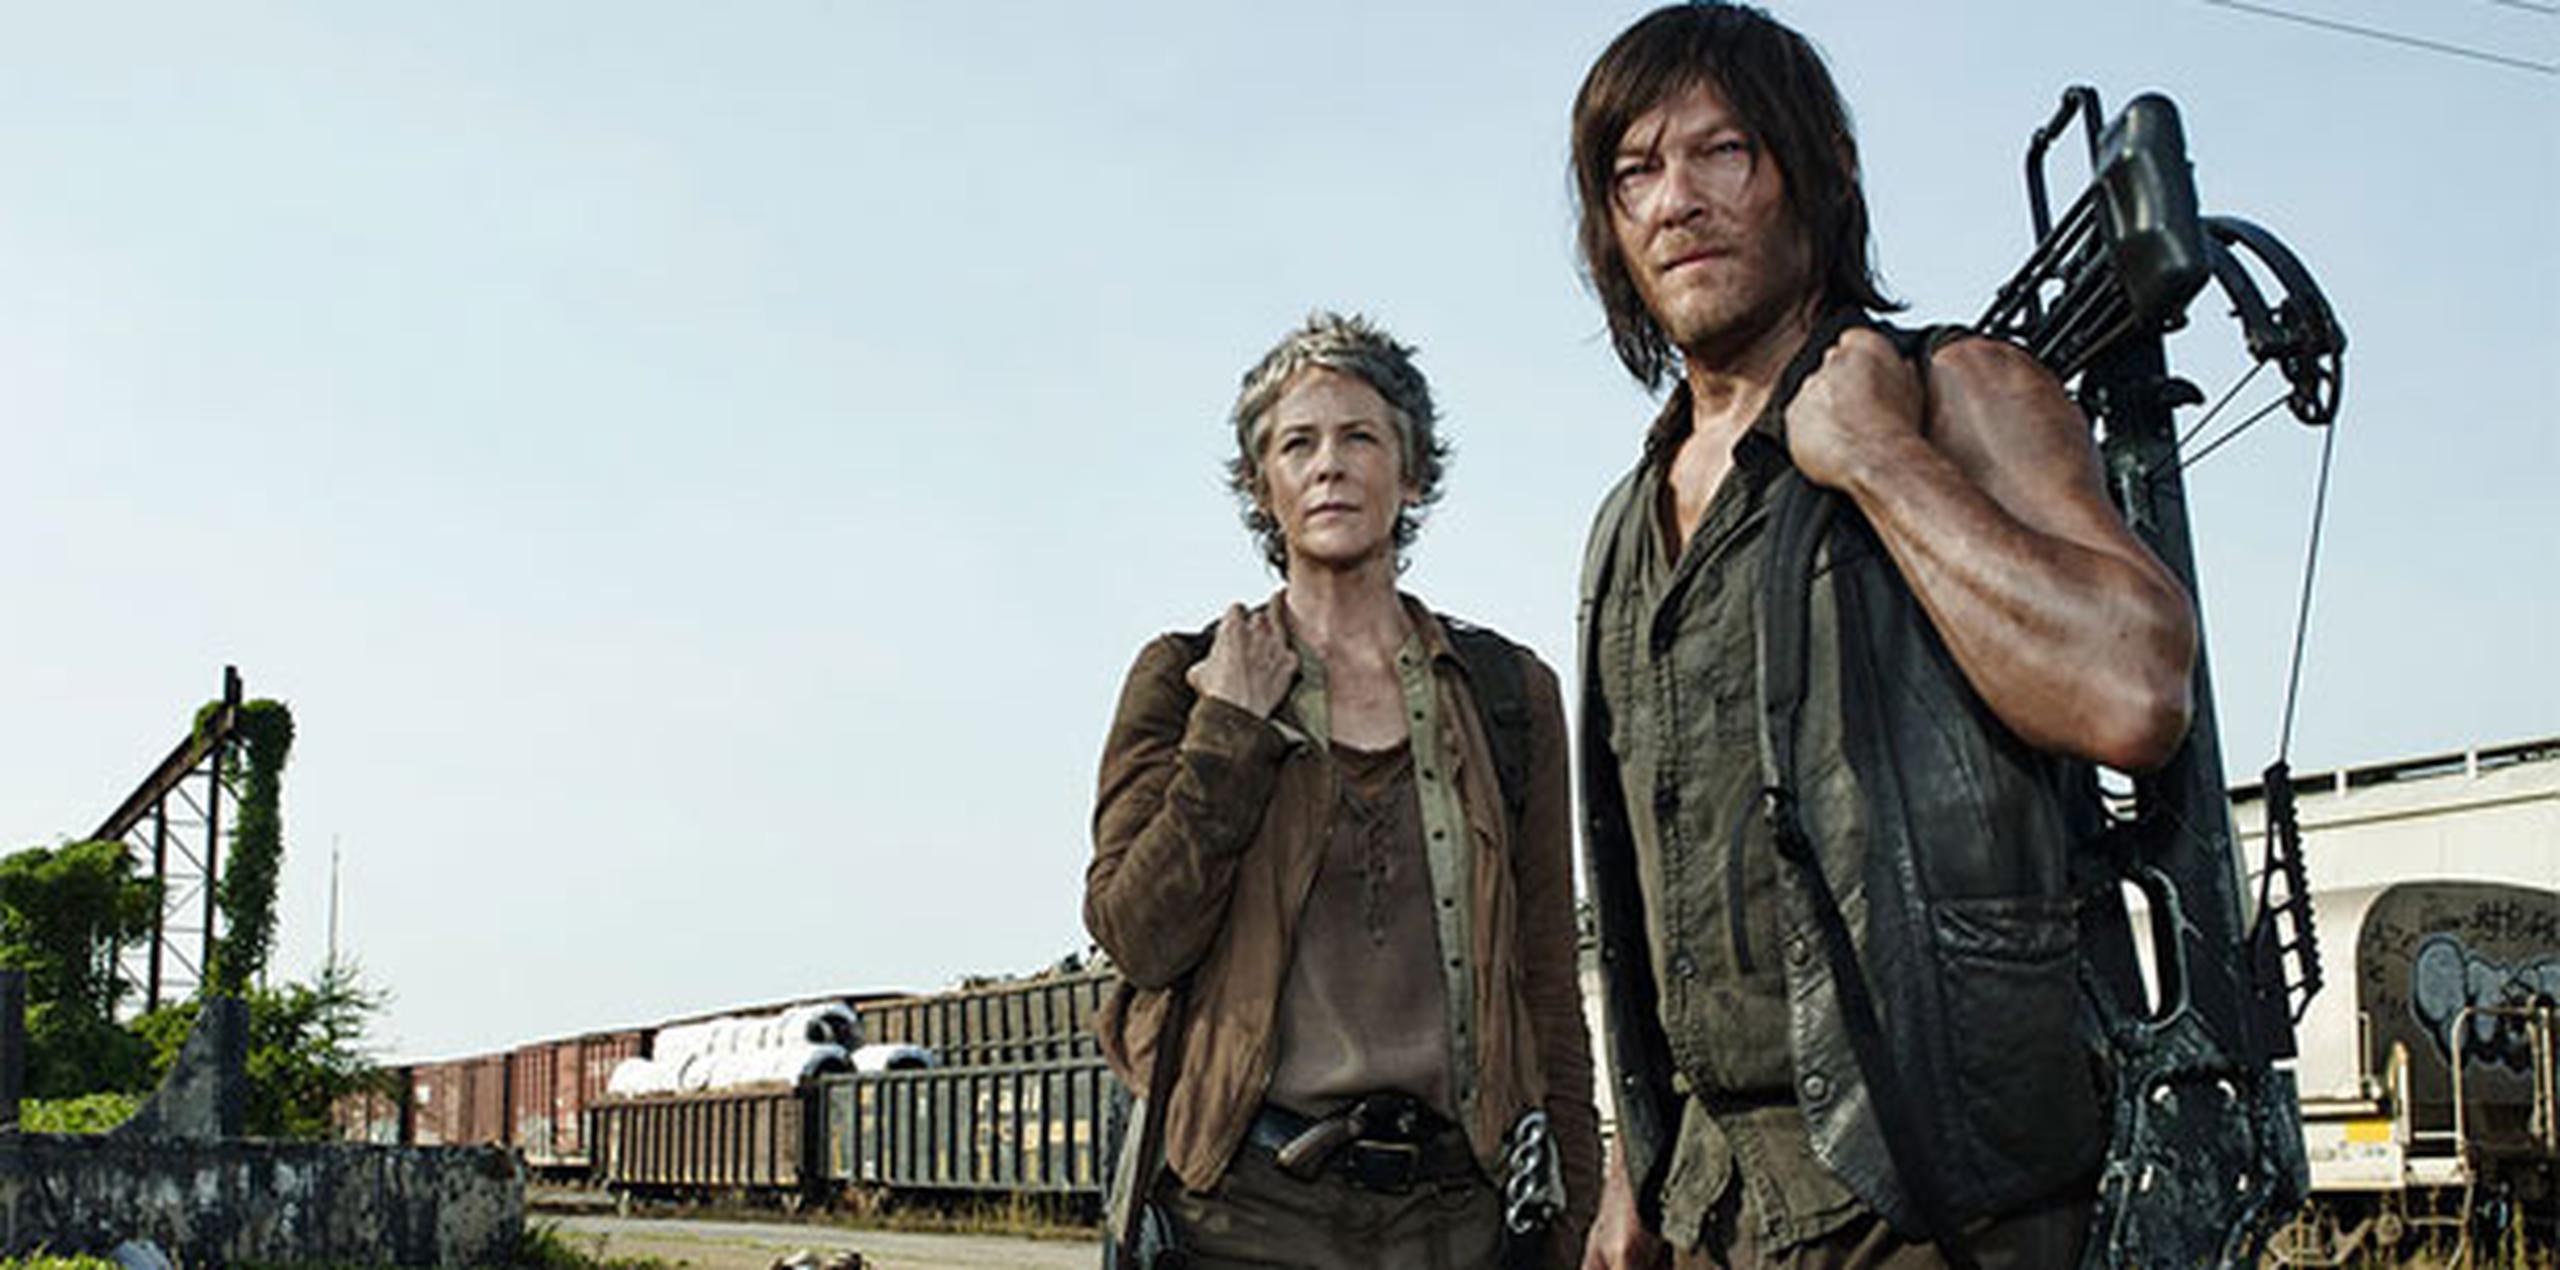 Según datos del canal de cable, "The Walking Dead" ha sido el programa más visto en la televisión por el grupo de espectadores de entre 19 y 48 años desde 2012. (Archivo)